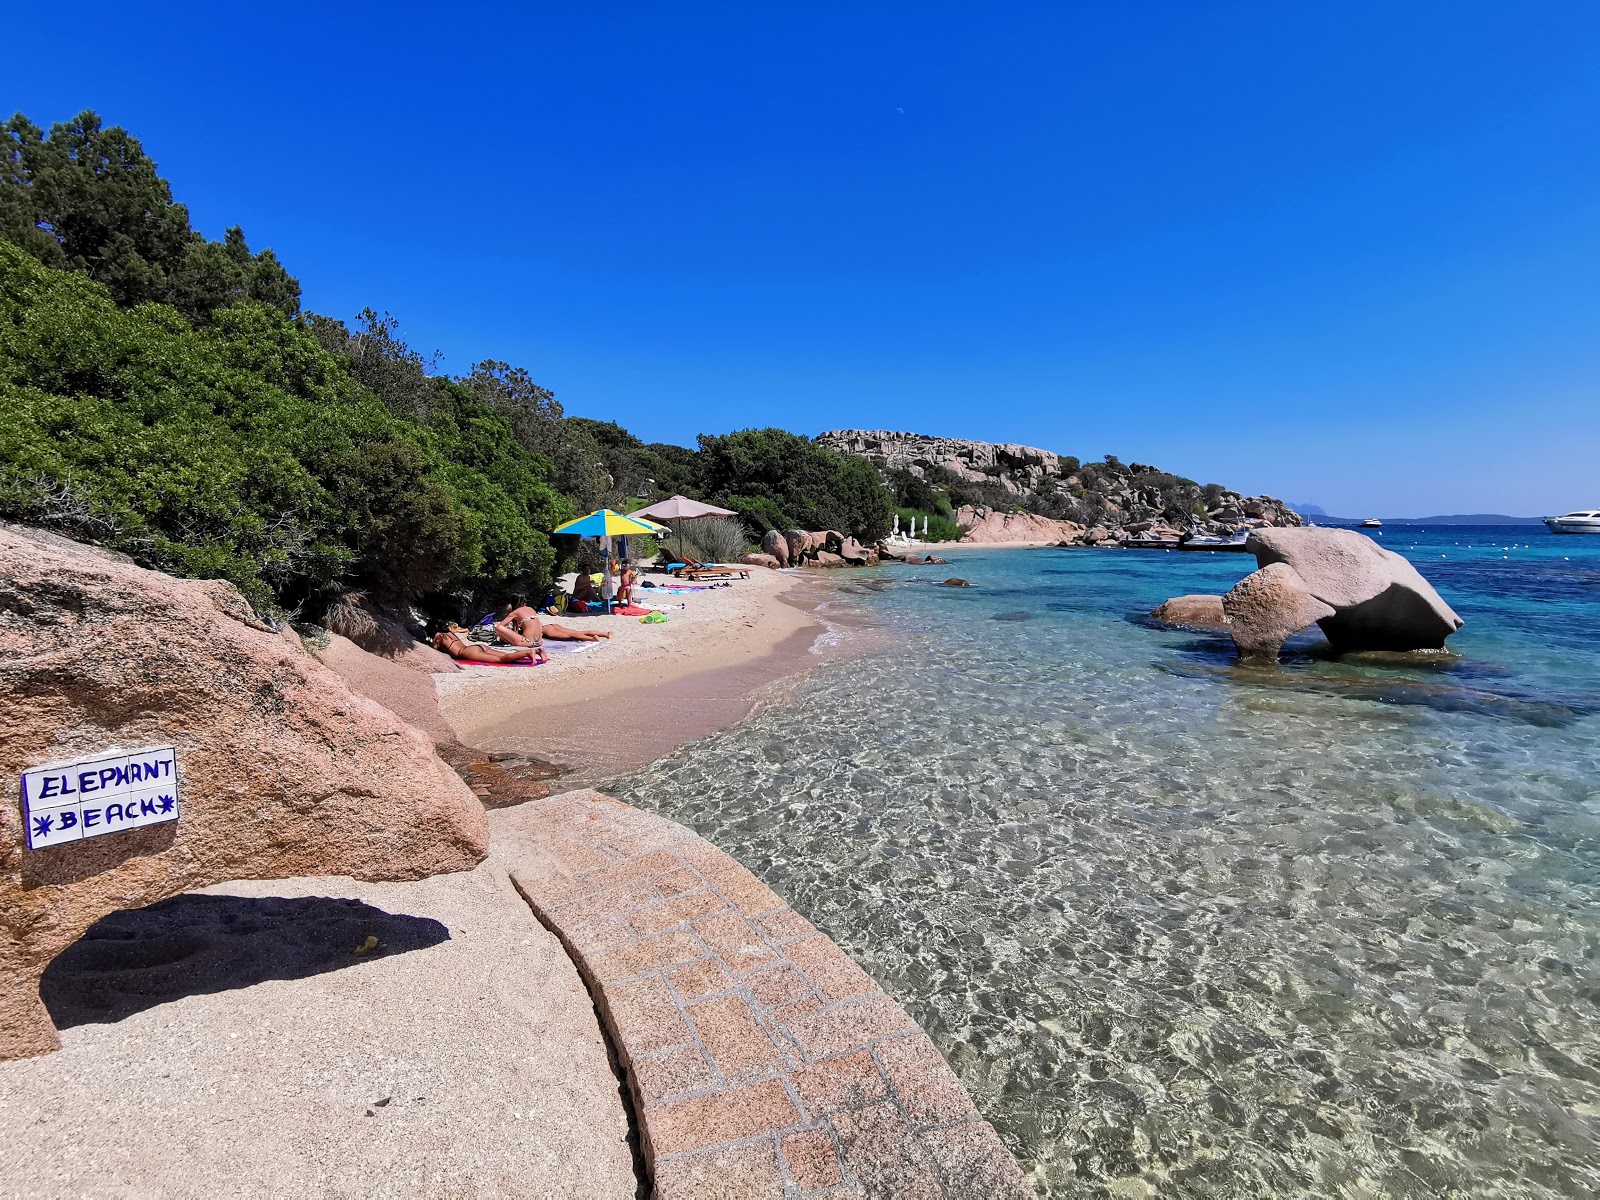 Photo of Spiaggia dell'Elefante with small multi bays